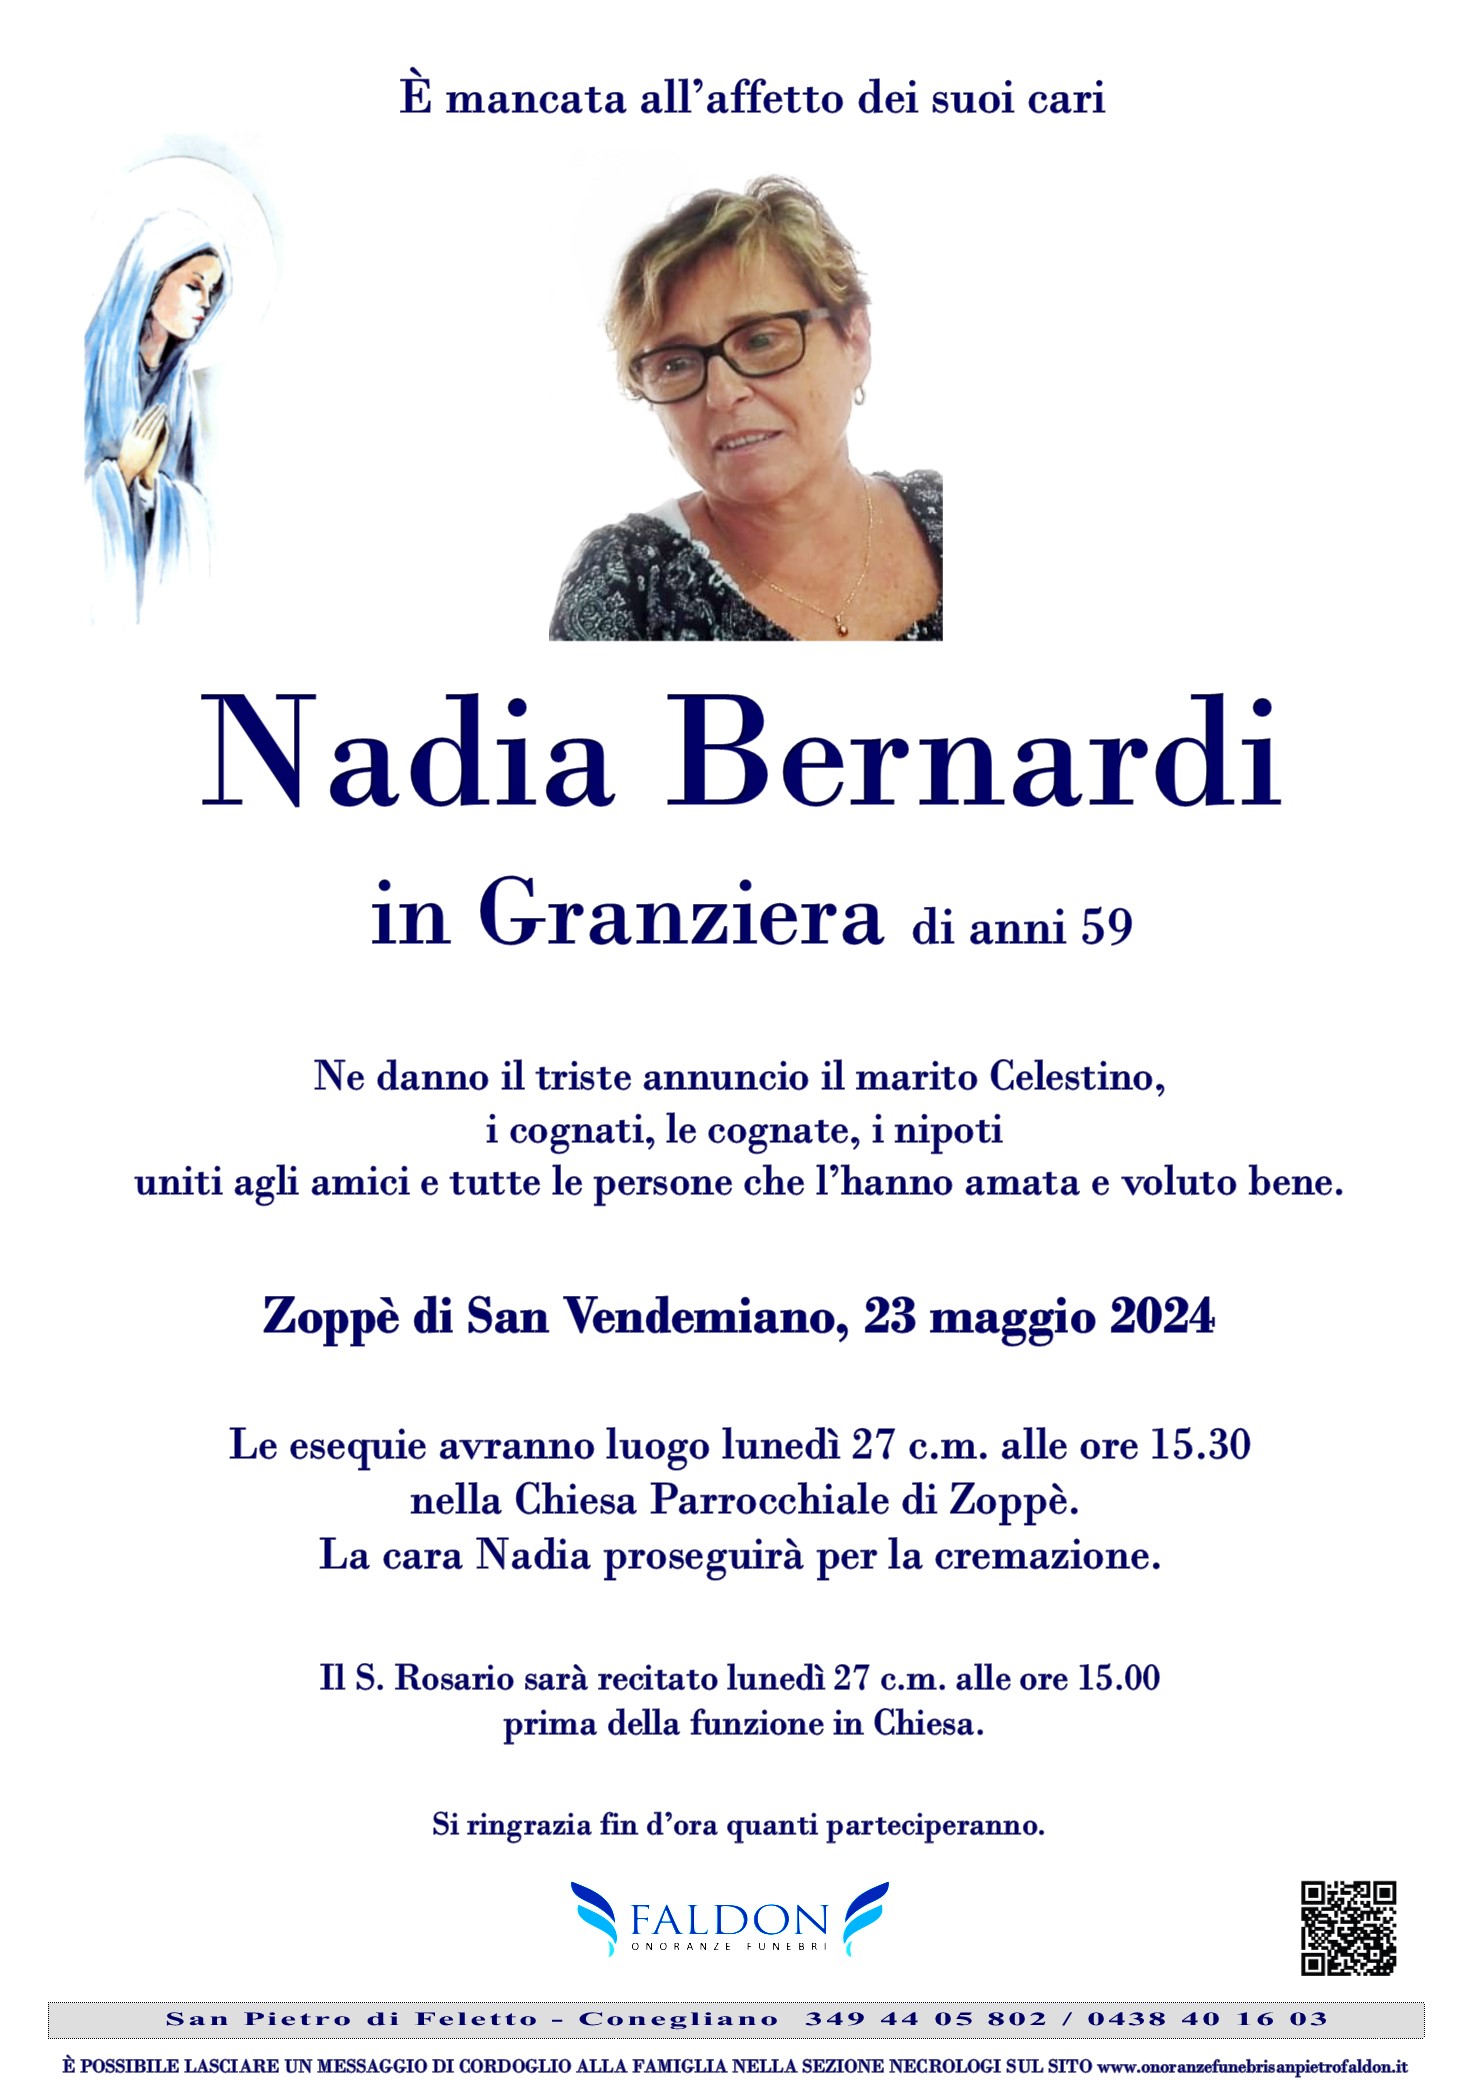 Nadia Bernardi